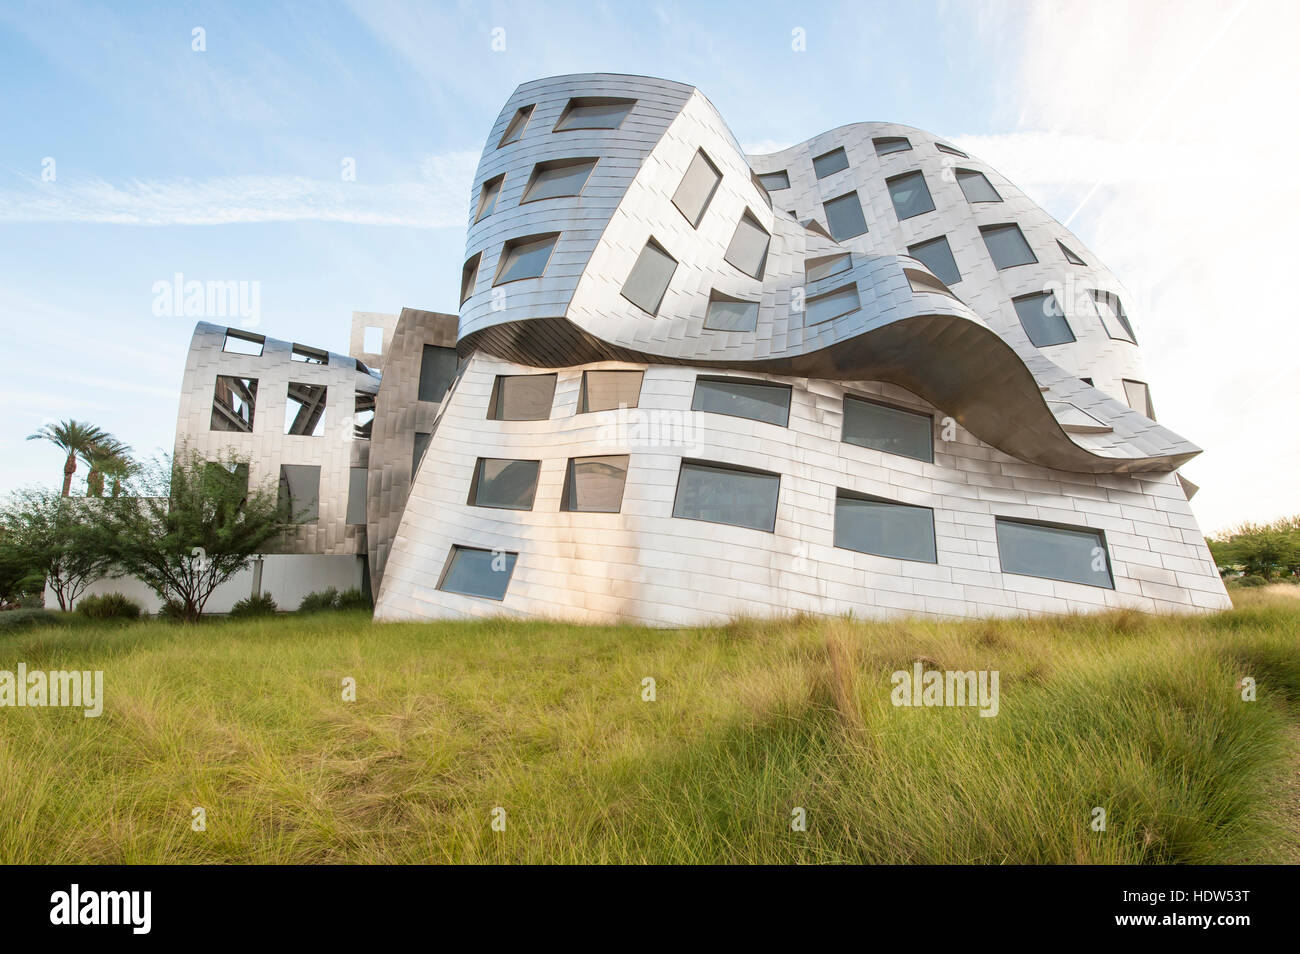 Cleveland Clinic Lou Ruvo Center pour la santé du cerveau bâtiment conçu par Frank Gehry, Las Vegas, Nevada. Banque D'Images